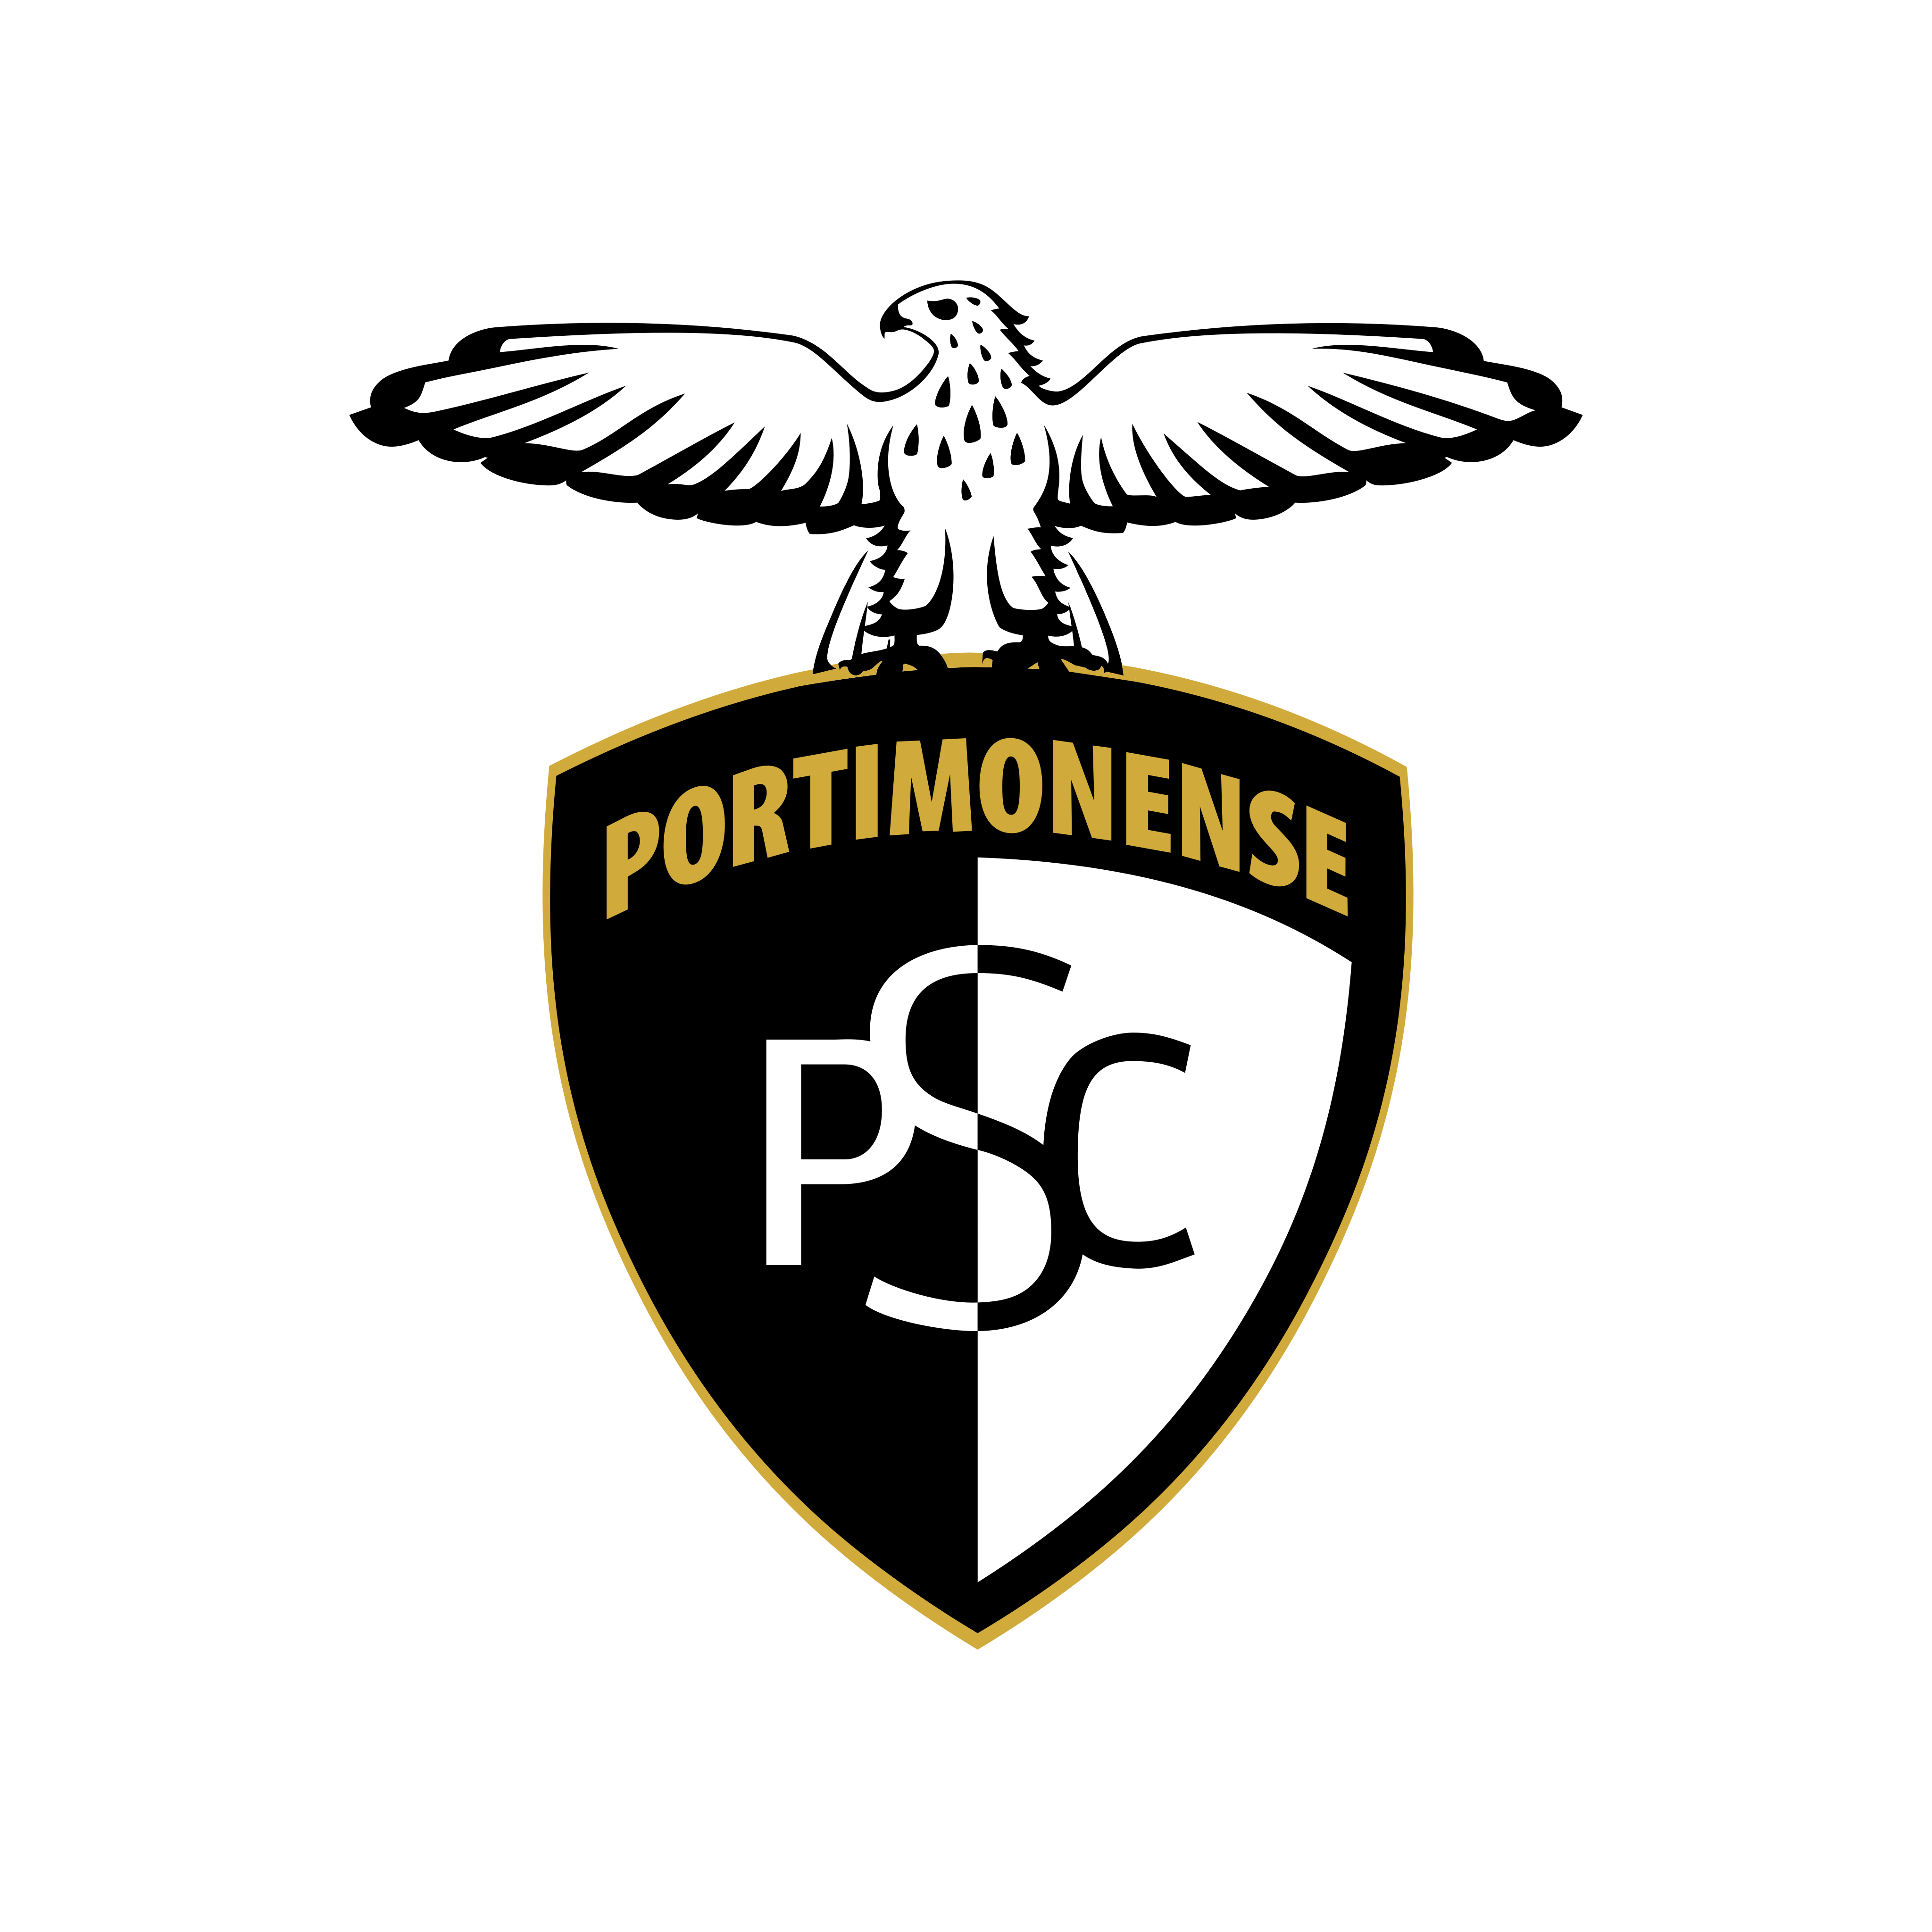 portimonense sc logo 0 - Portimonense SC Logo